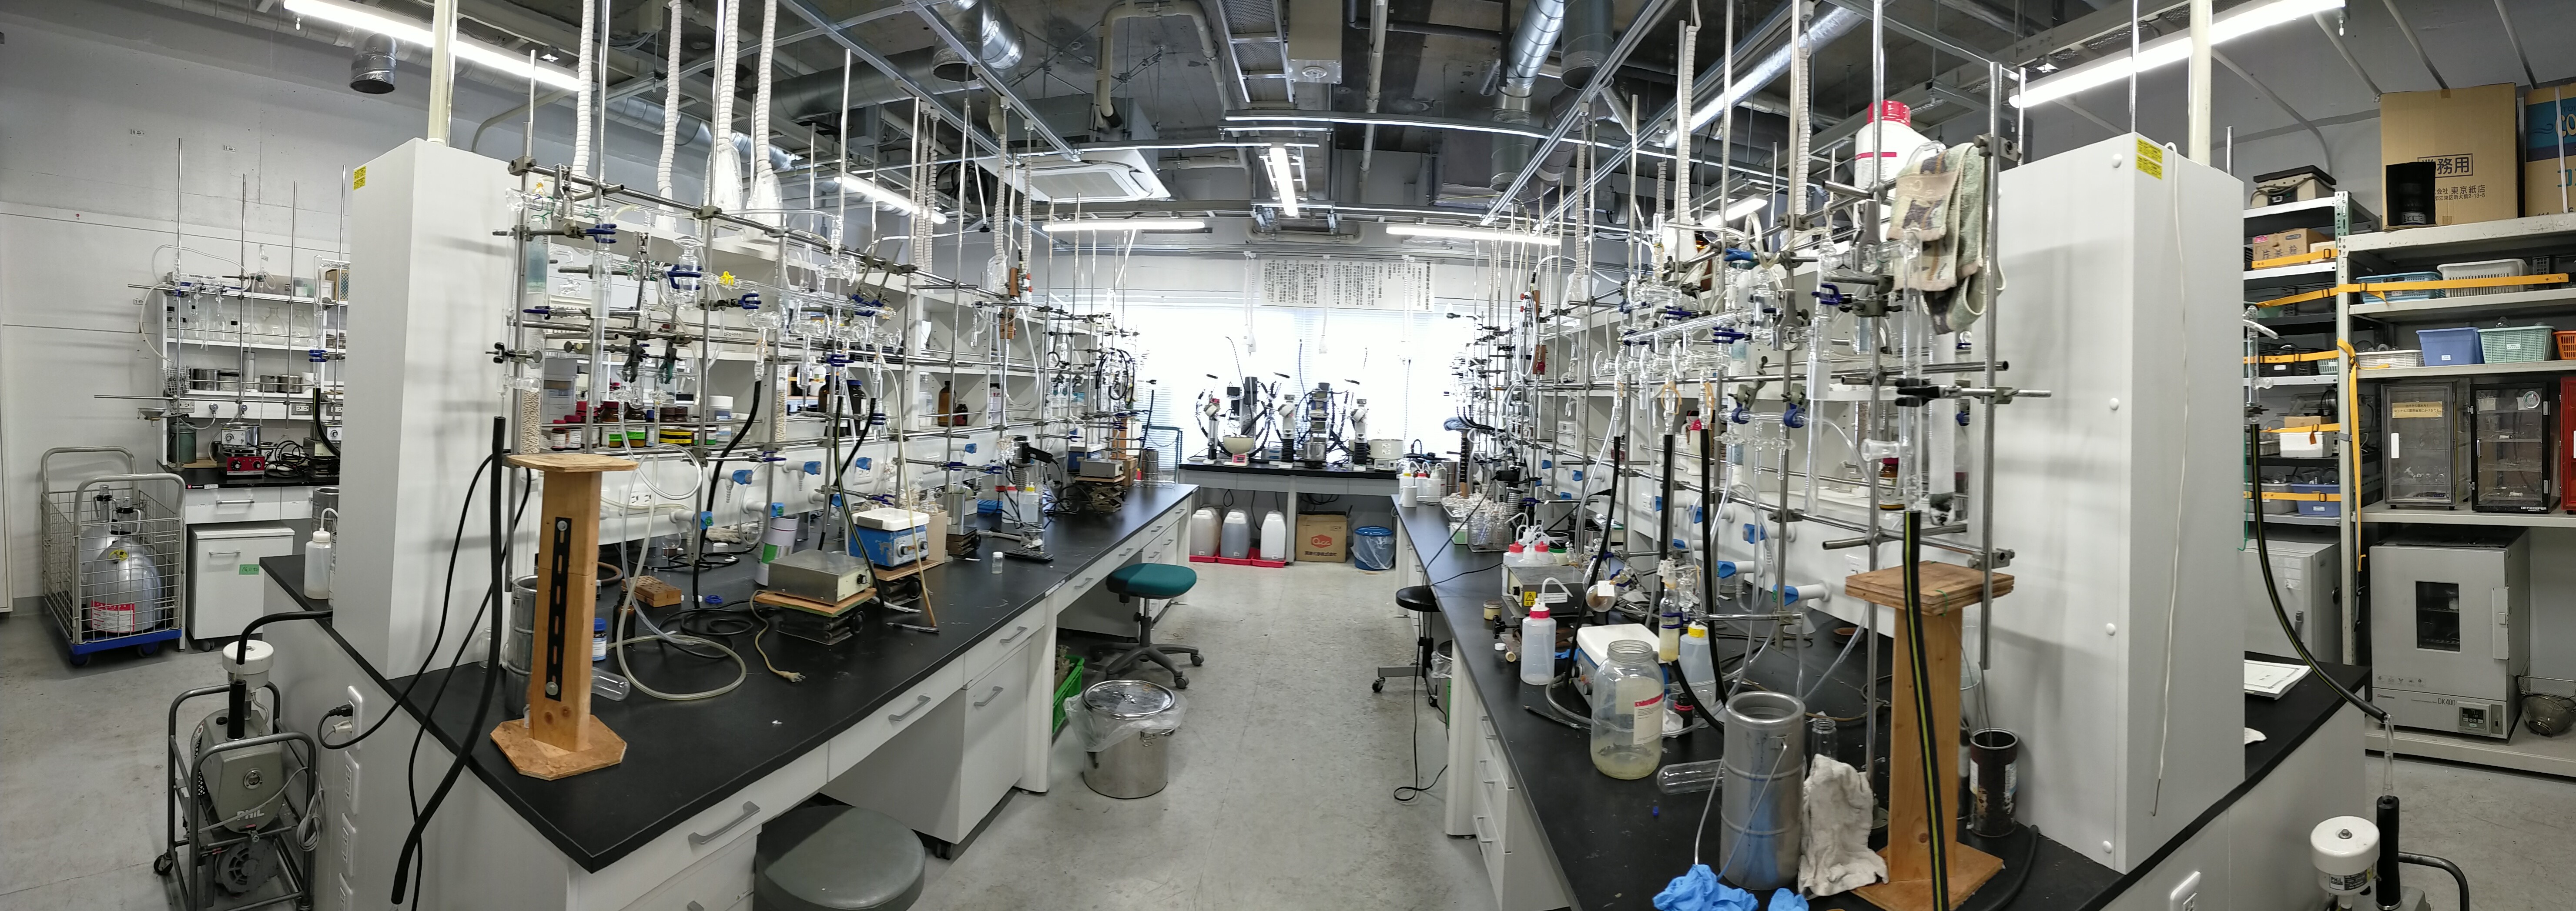 研究室